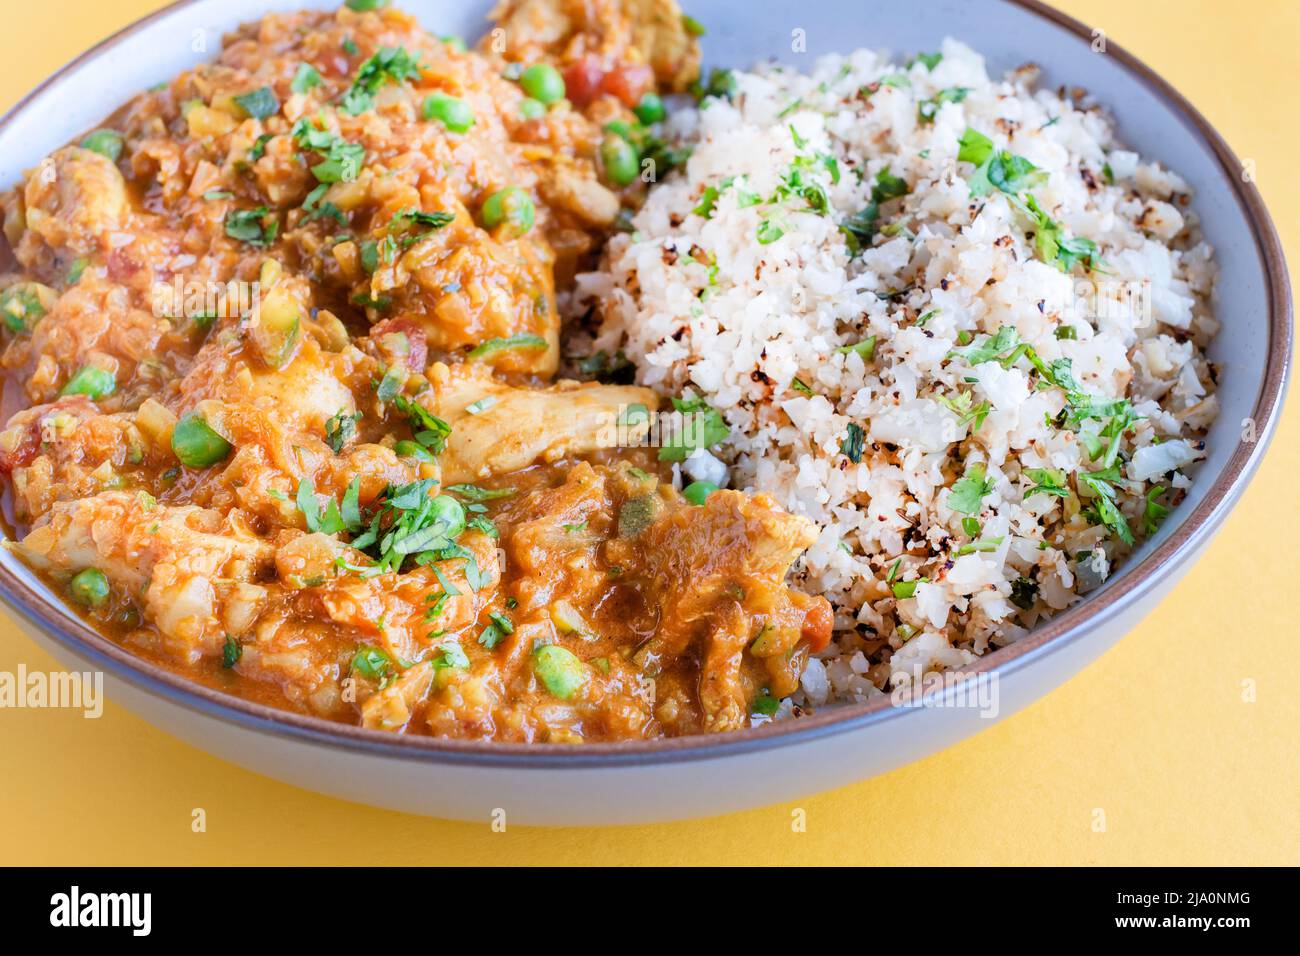 Una zucchina di pollo fatta in casa Tikka masala curry servito in una ciotola con riso cavolfiore. Una scelta di pasto sano ricco di proteine che è keto amichevole Foto Stock